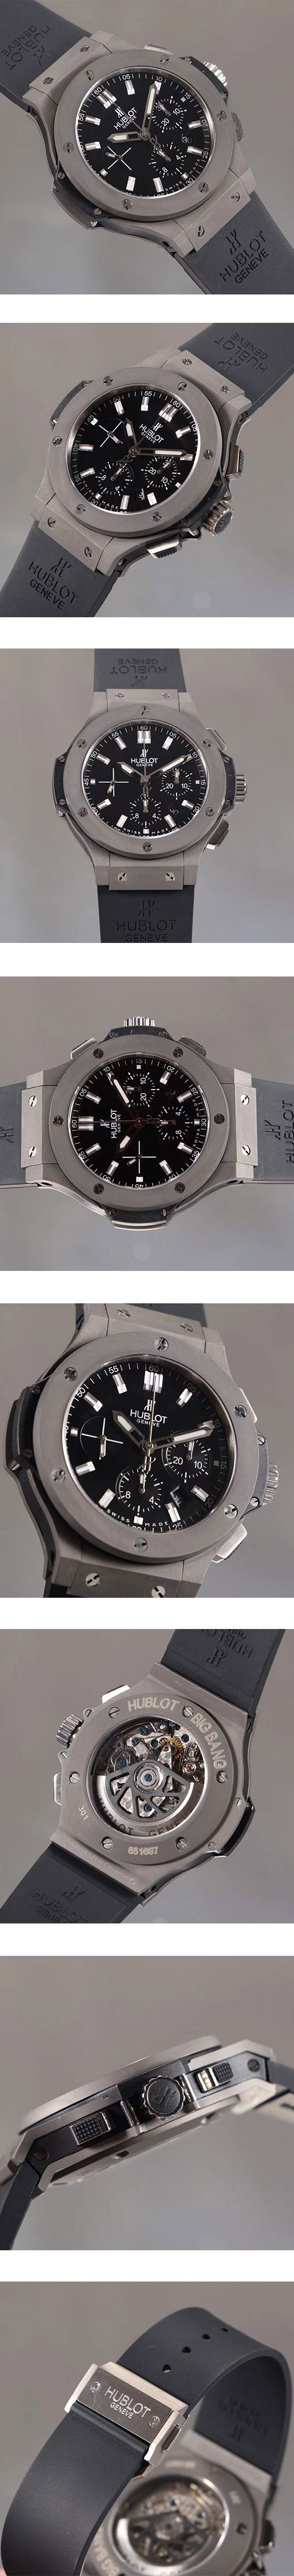 ウブロコピー ビッグバン ブラックマジック 301.SX.1170.RX メンズ腕時計